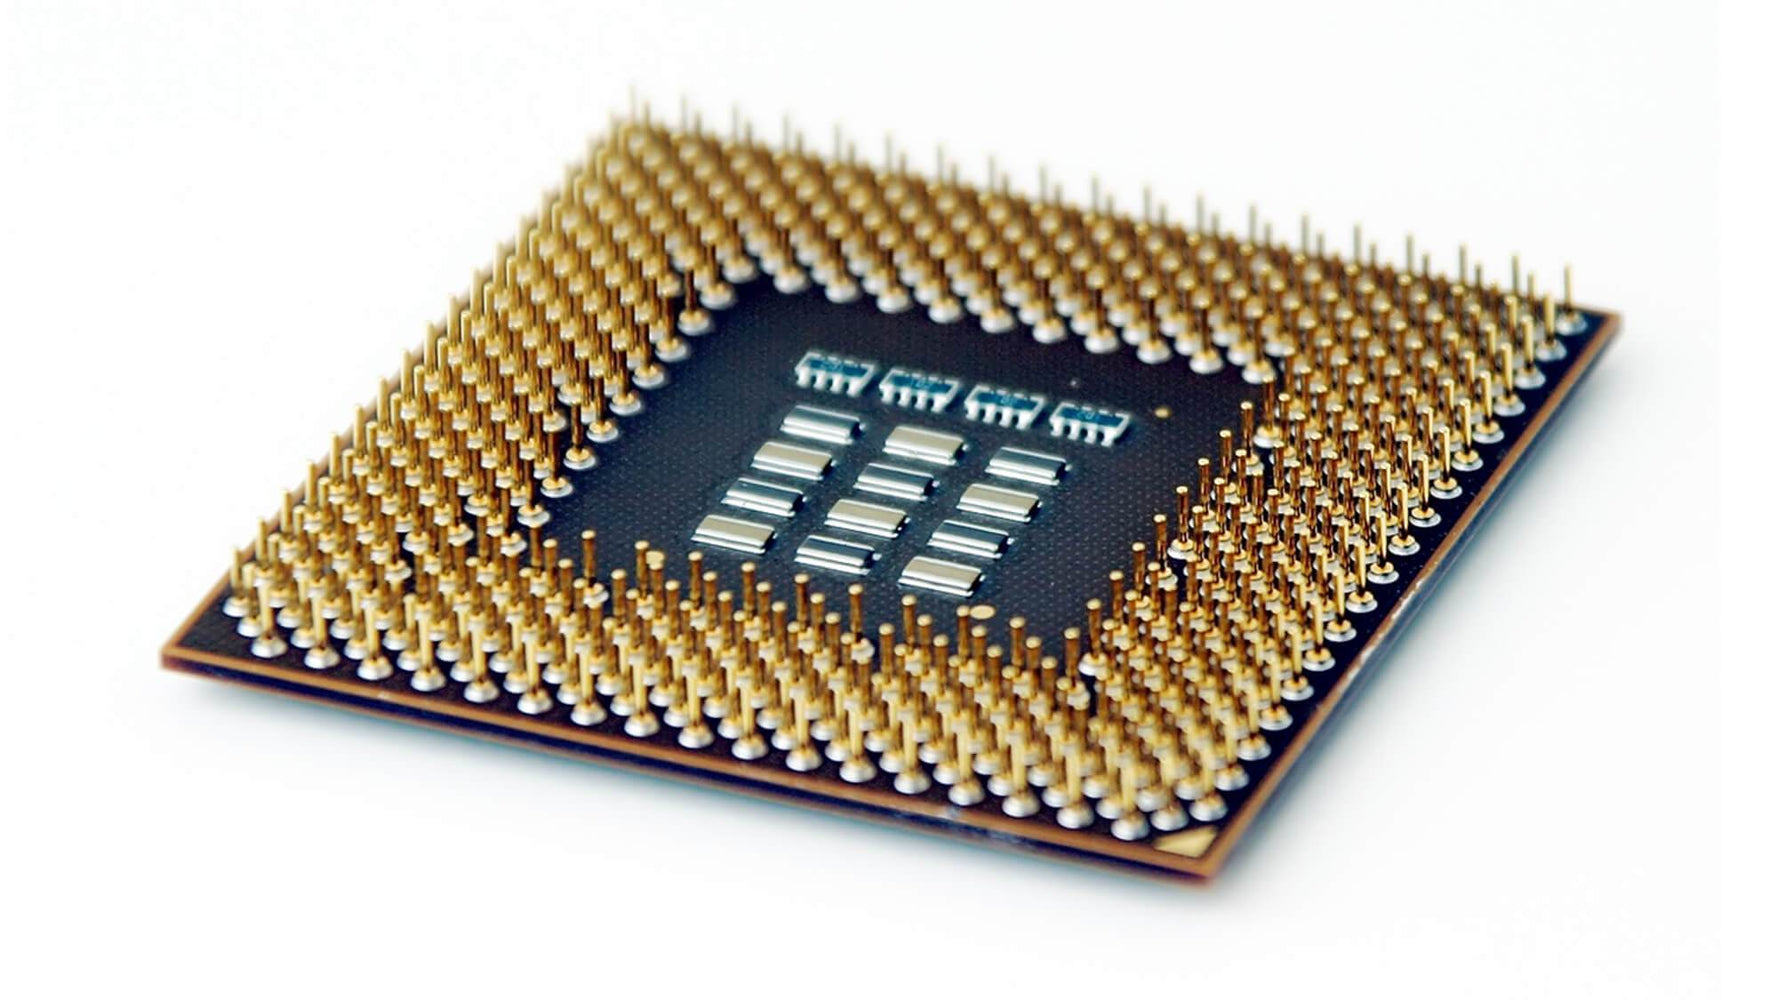 BX80604E7540 - Intel Xeon E7540 6 Core 2.00GHz 6.40GT/s QPI 18MB L3 Cache Socket FCLGA1567 Processor